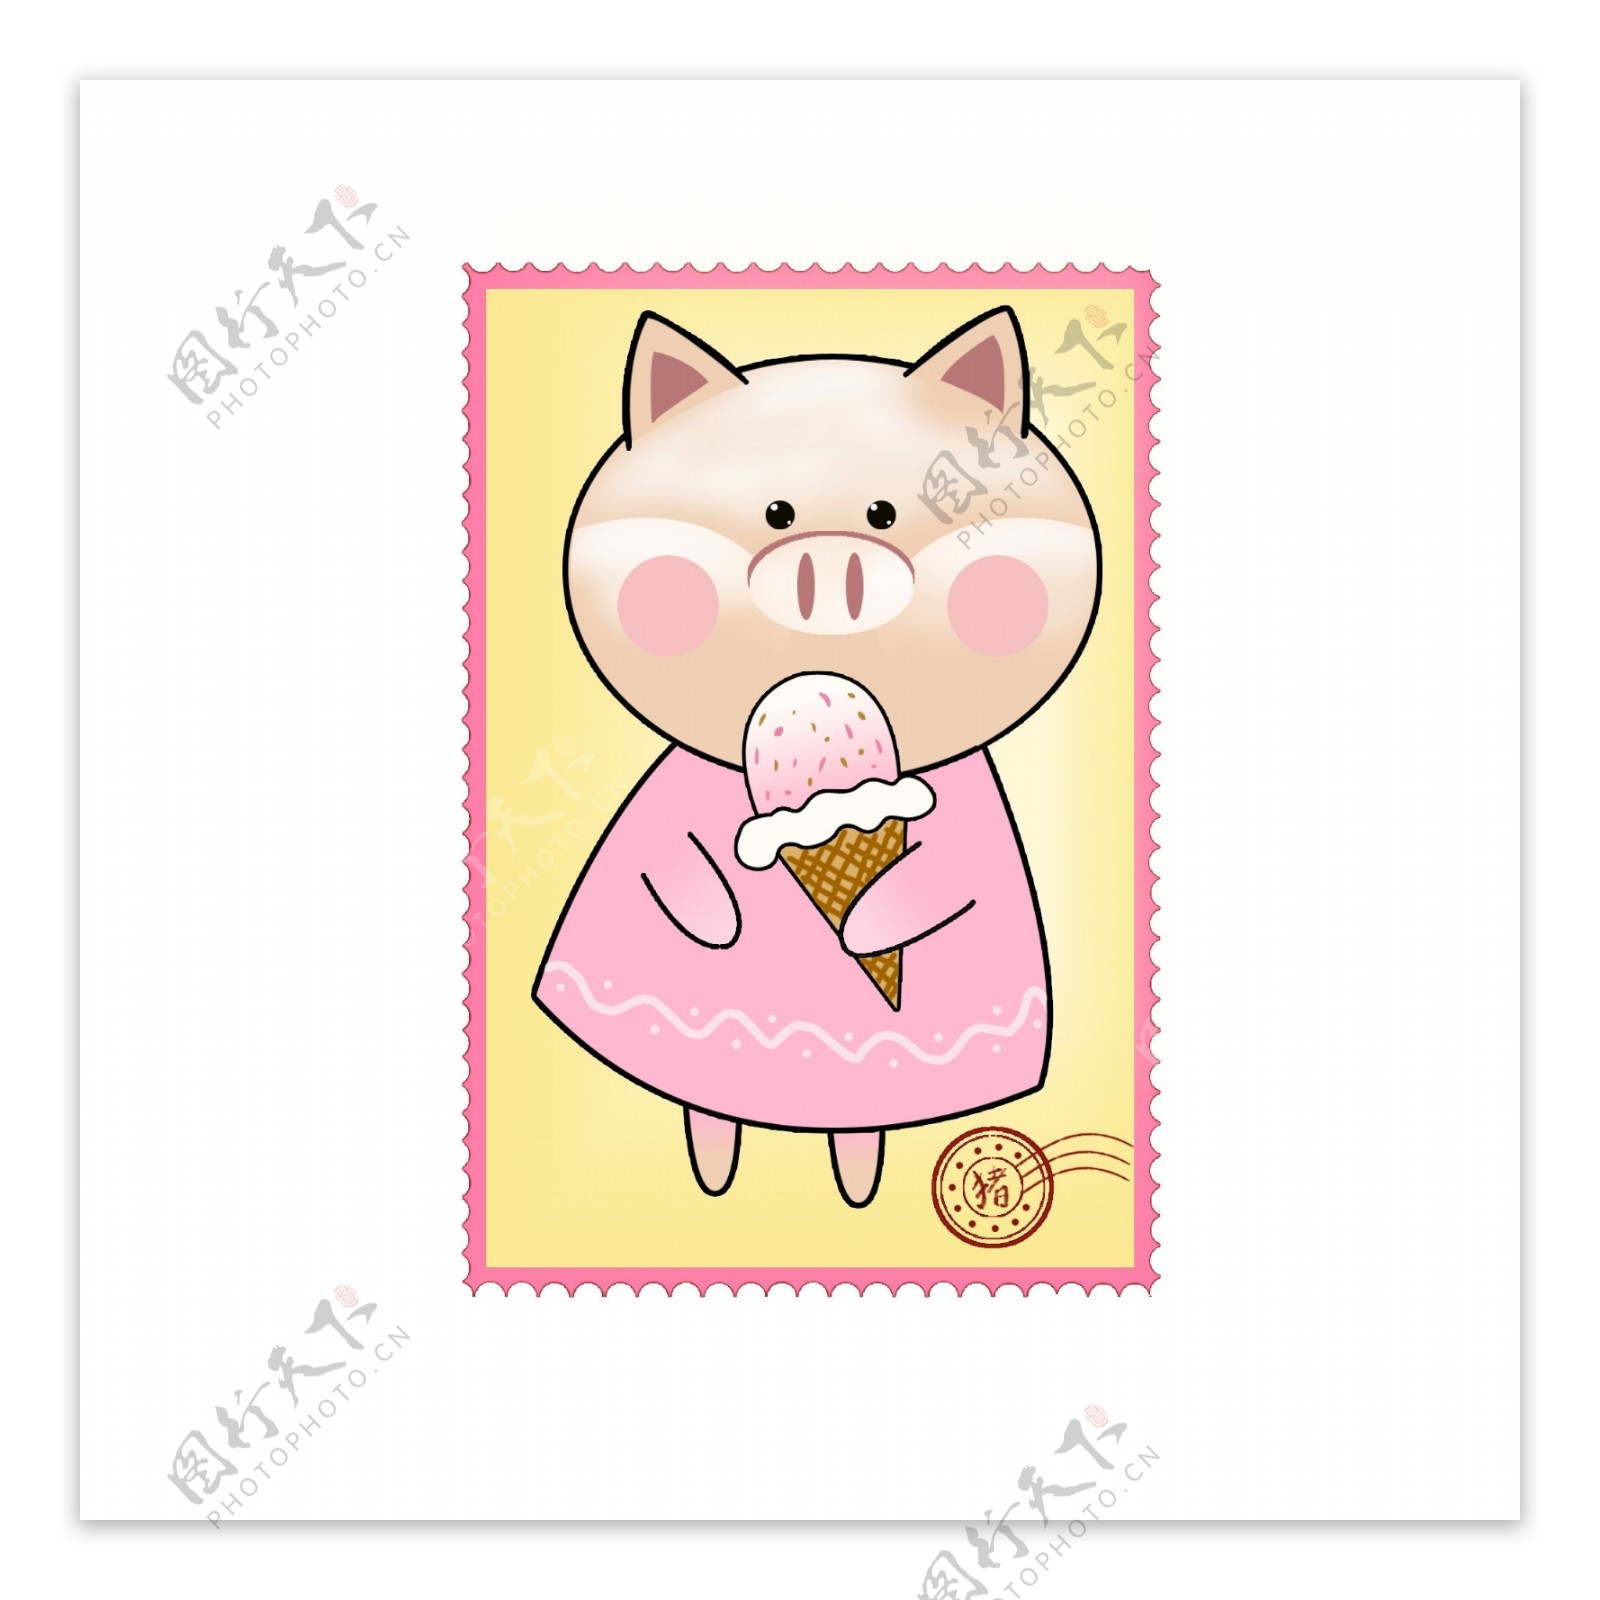 快乐小猪邮票手绘素材